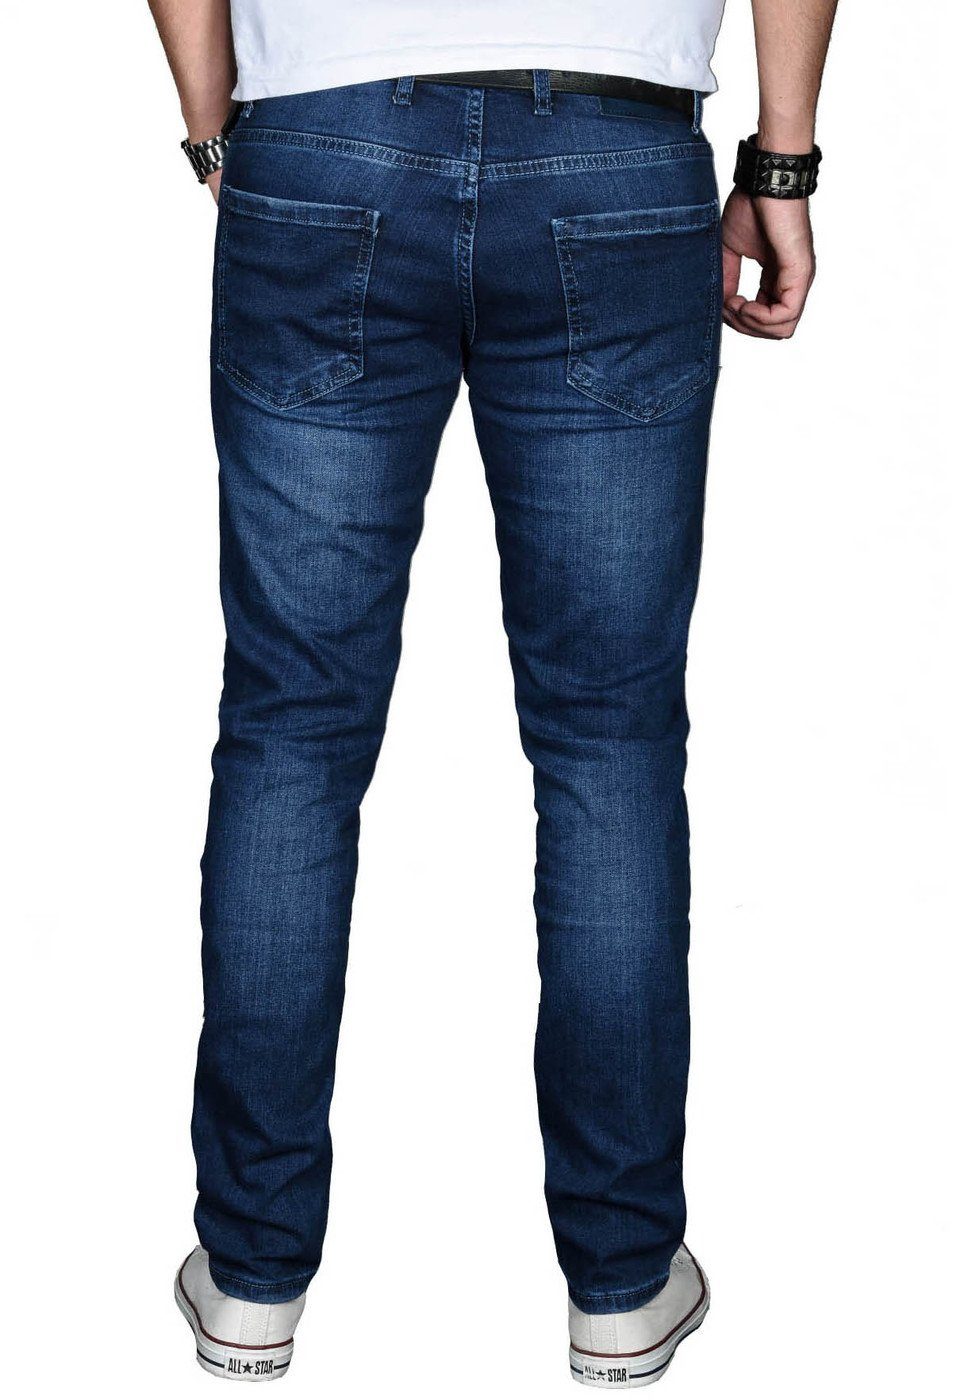 Alessandro Salvarini Straight-Jeans ASMinero Slim mit 2% Fit Elasthan Jeans dunkelblau